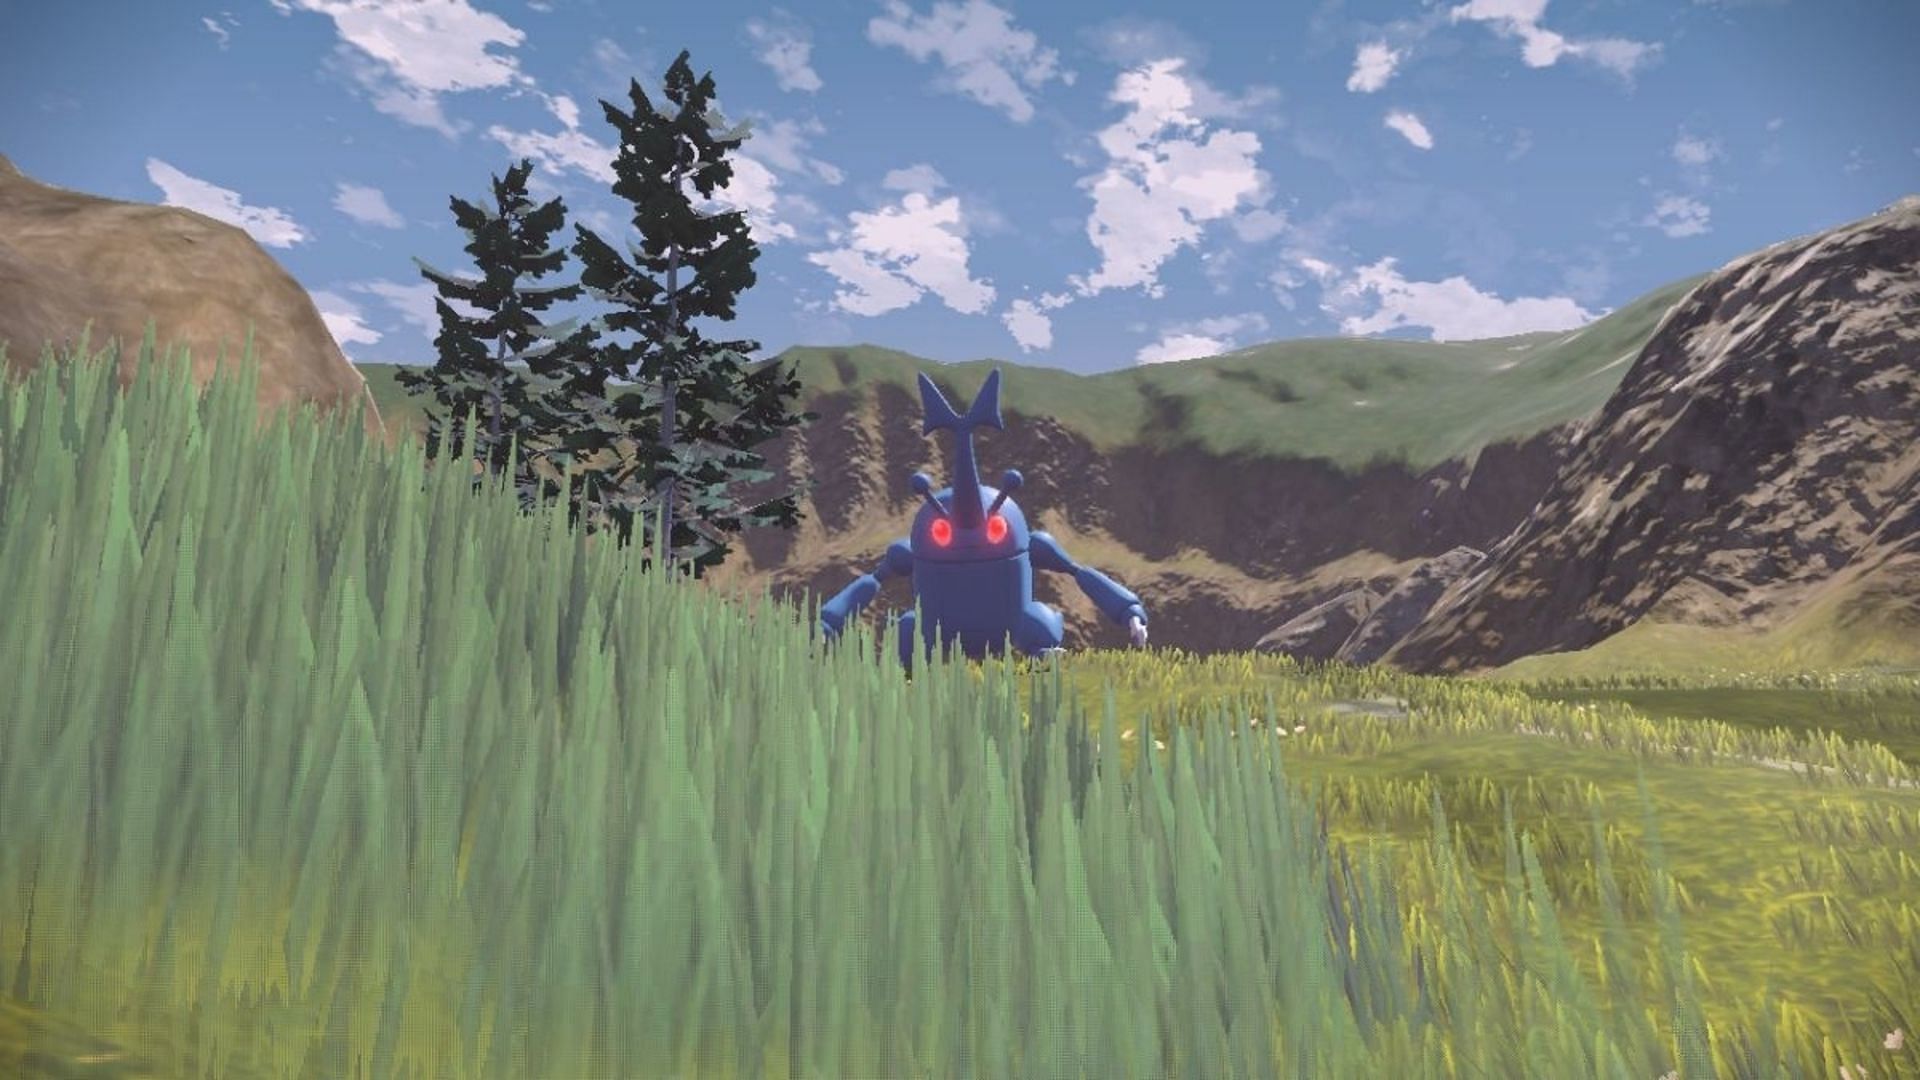 Heracross as he appears in the Hisui region. Image via Nintendo